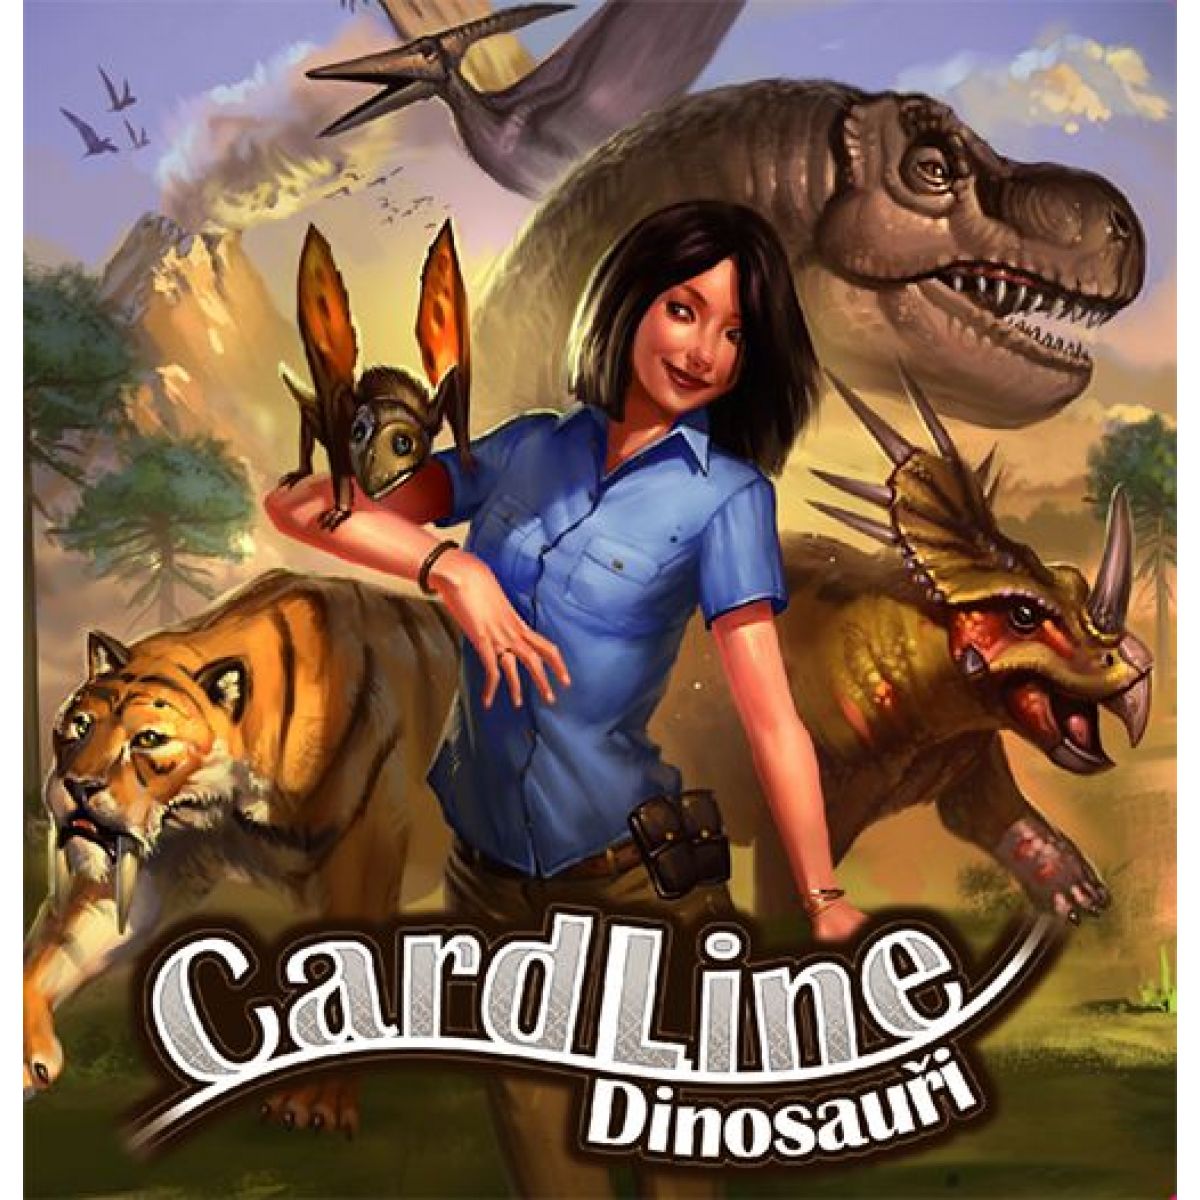 Cardline Dinosauři